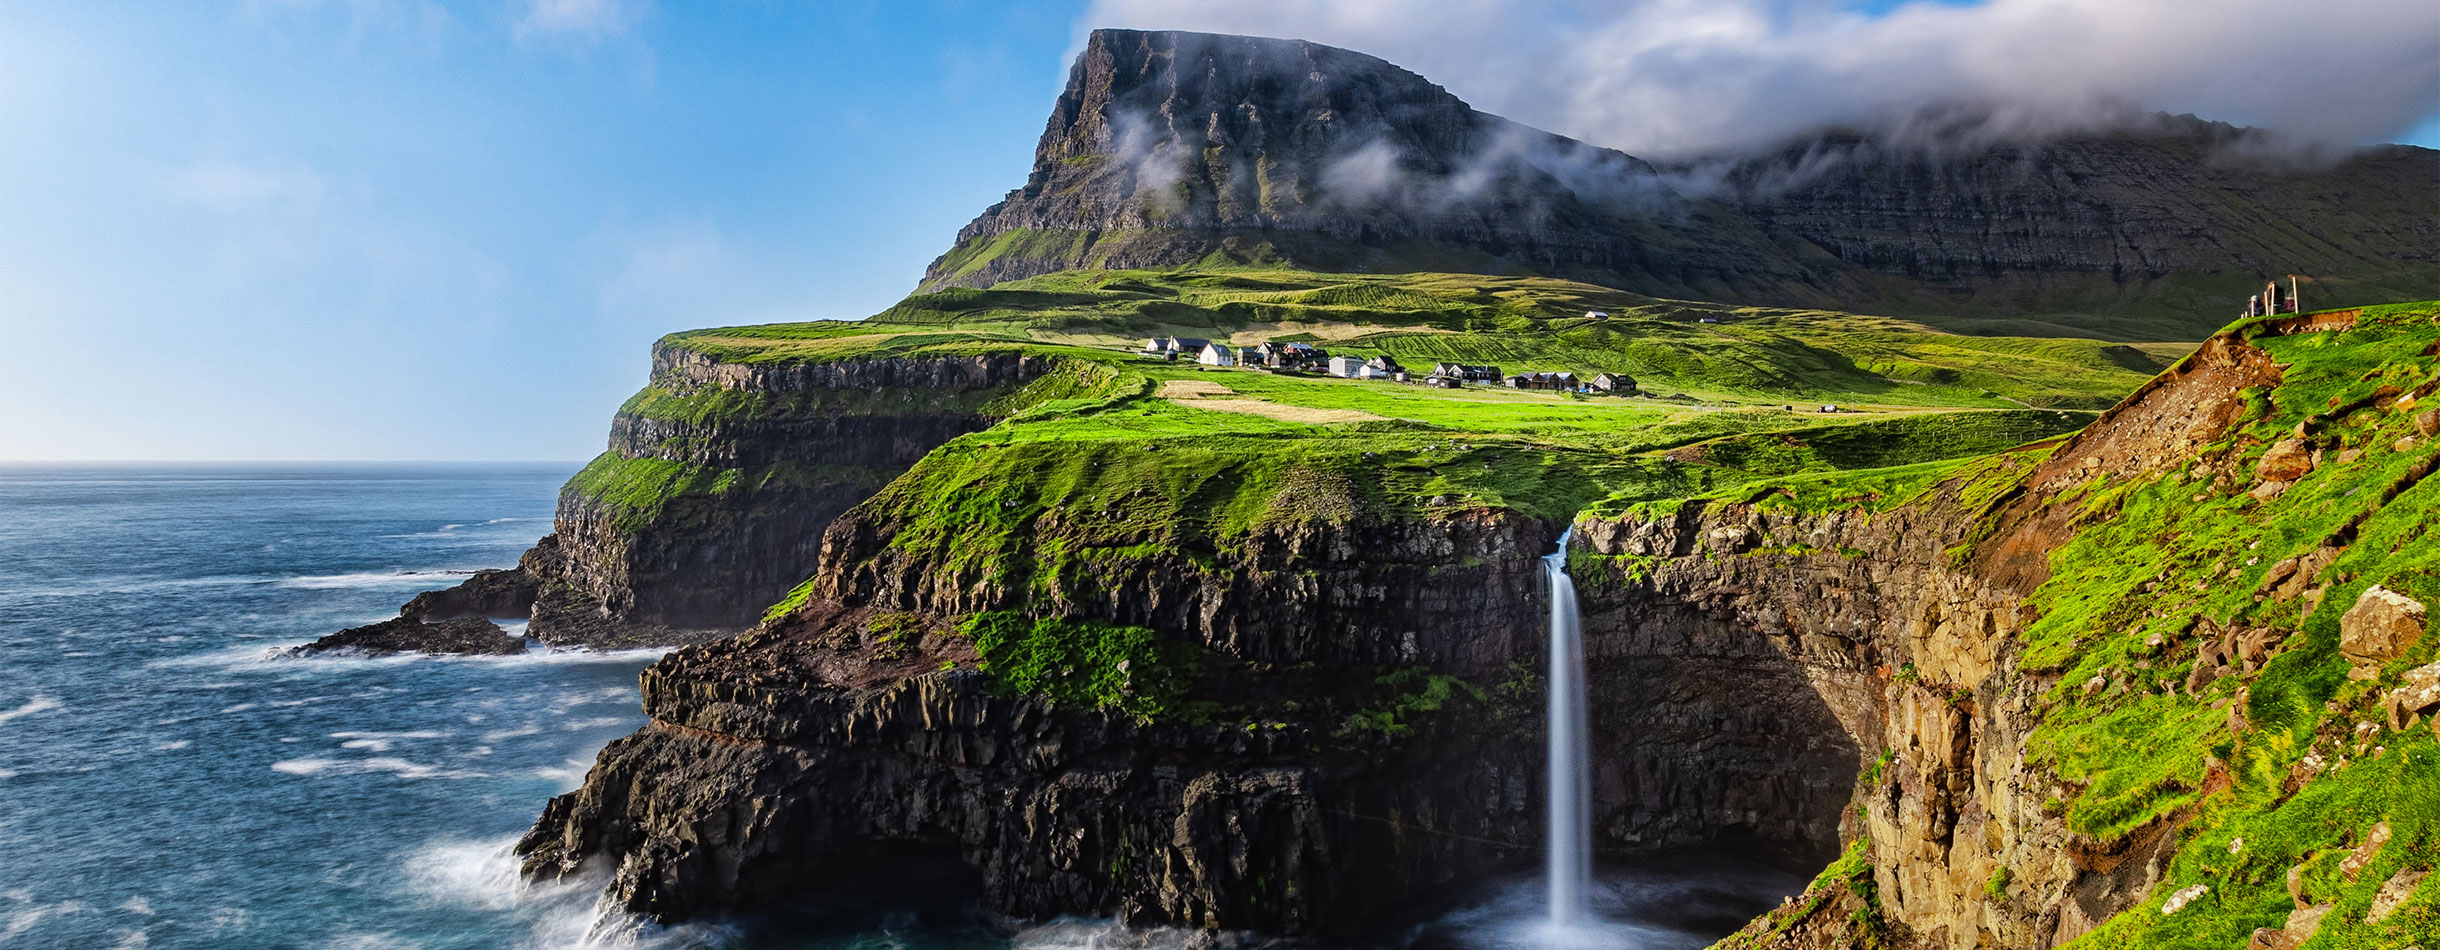 Gásadalur, Goose Valley, Faroe Islands